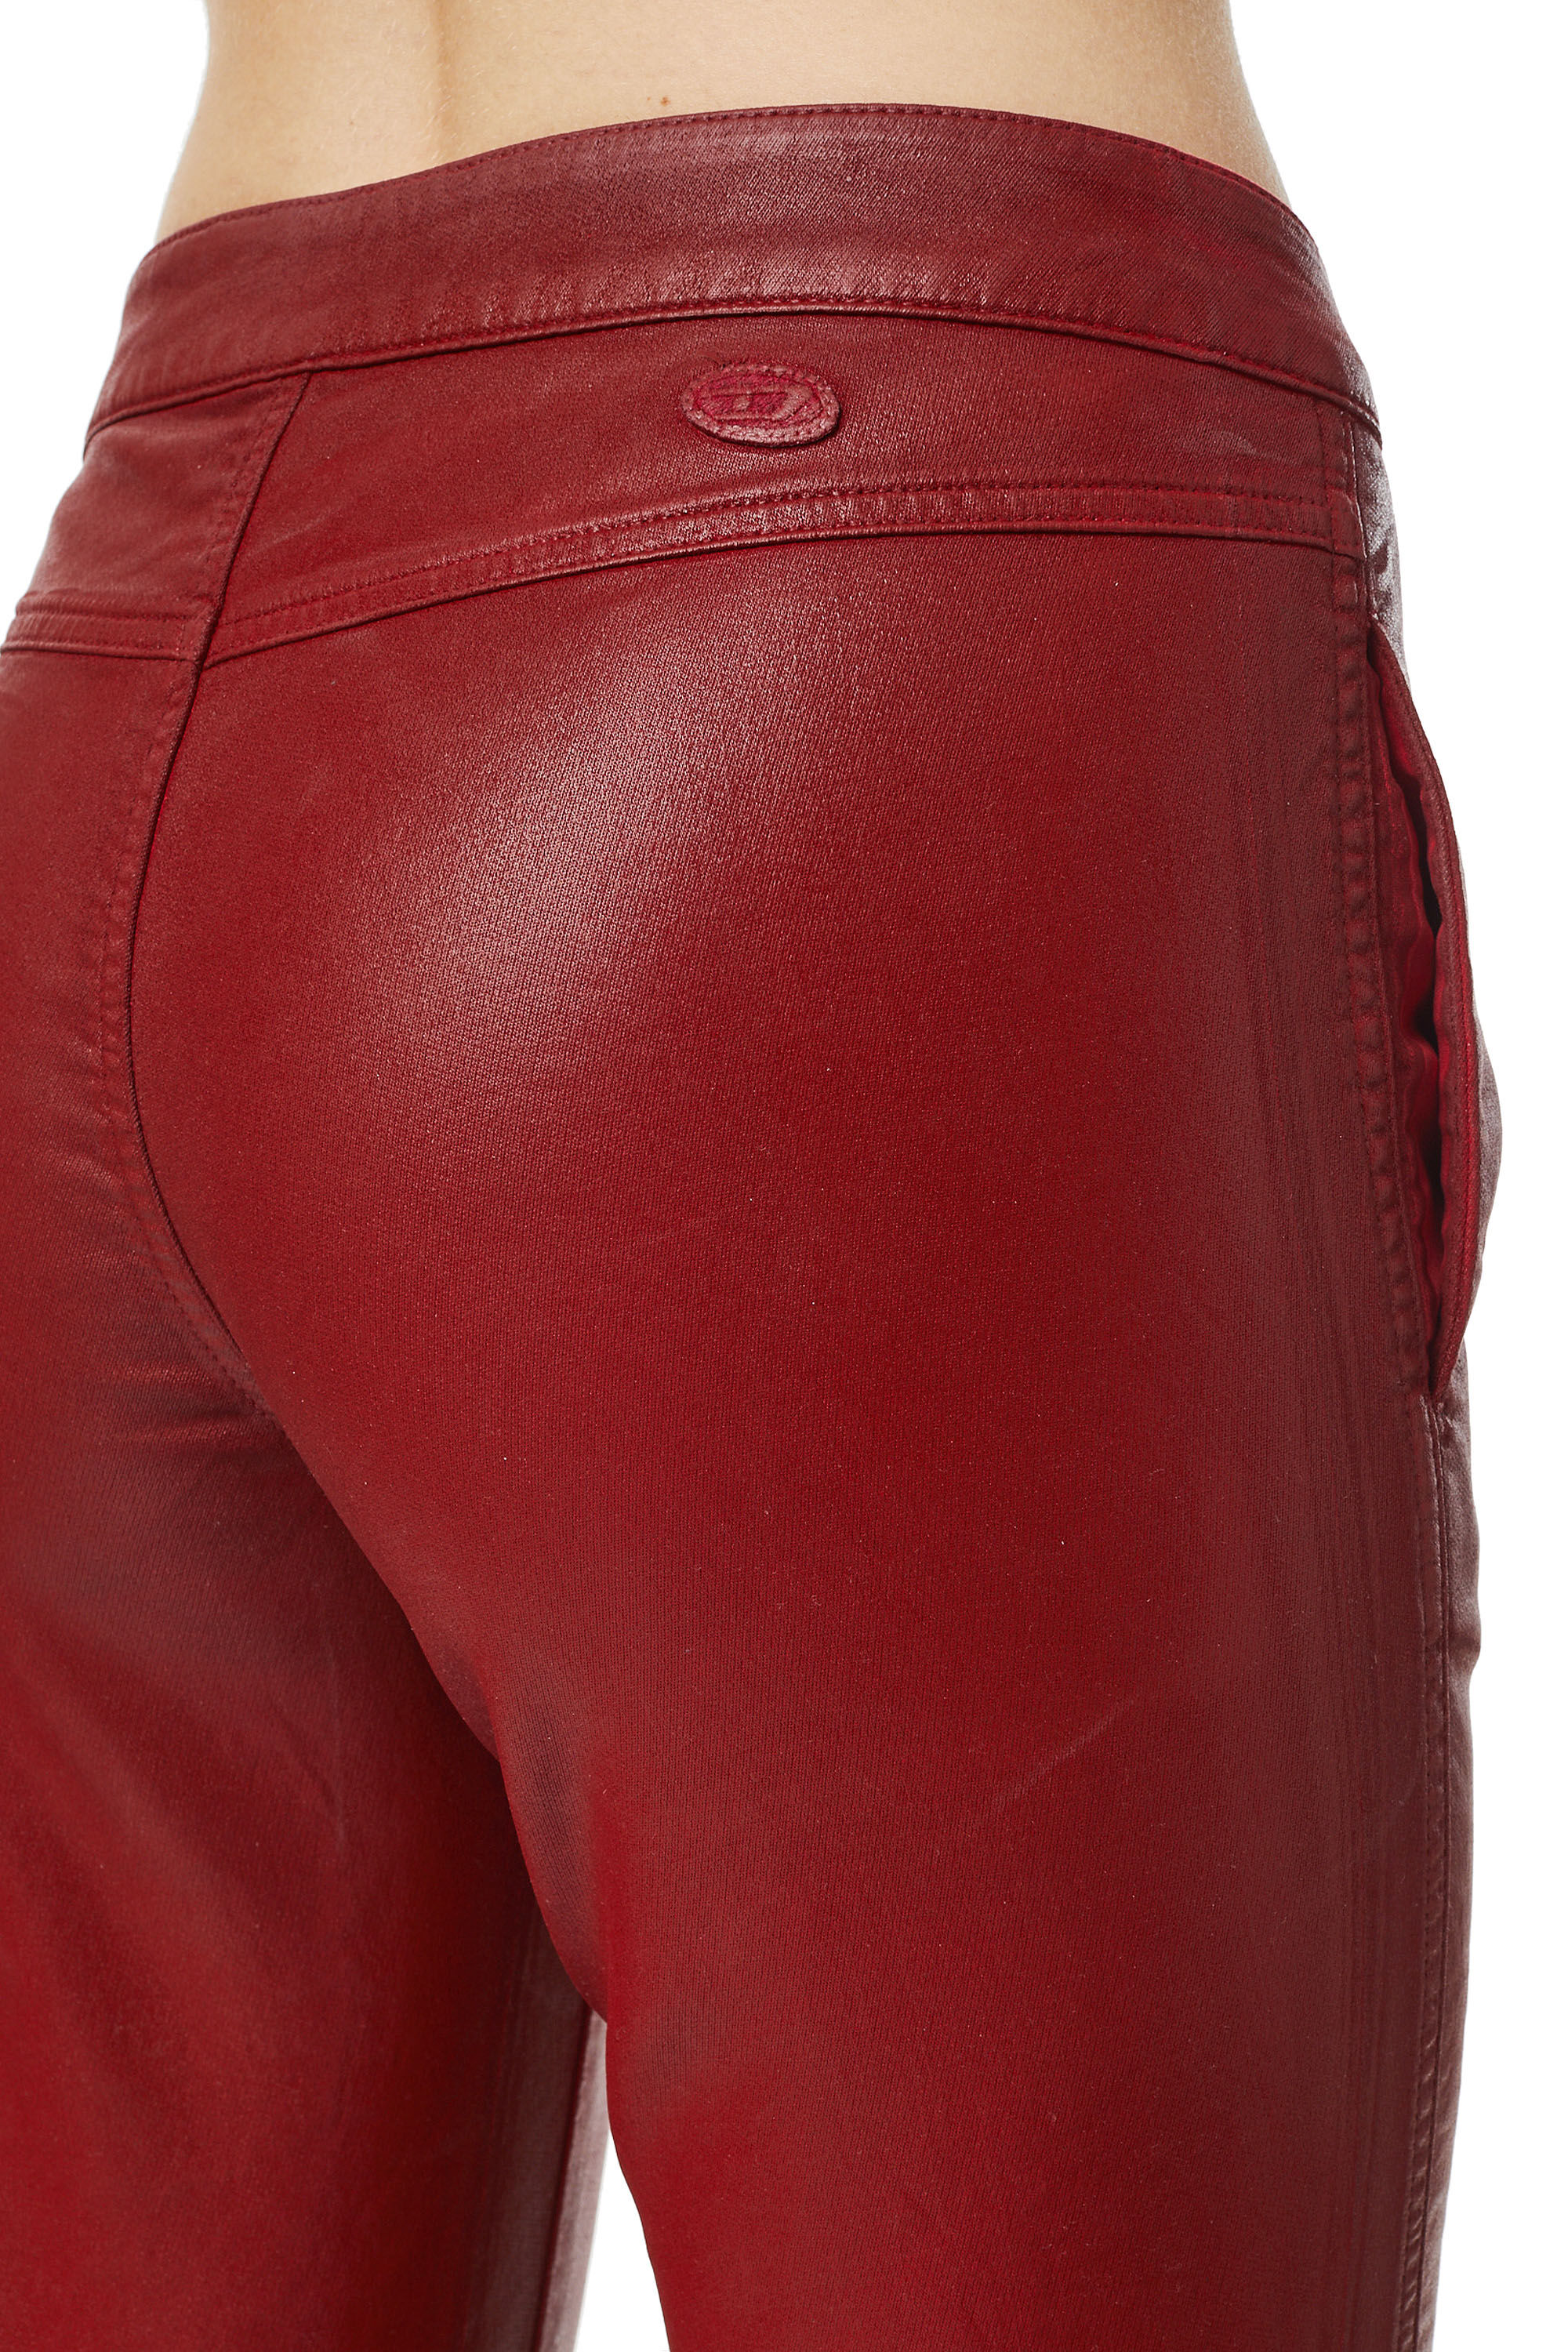 Diesel - BABHILA JoggJeans® 069YV Skinny, Rojo - Image 4